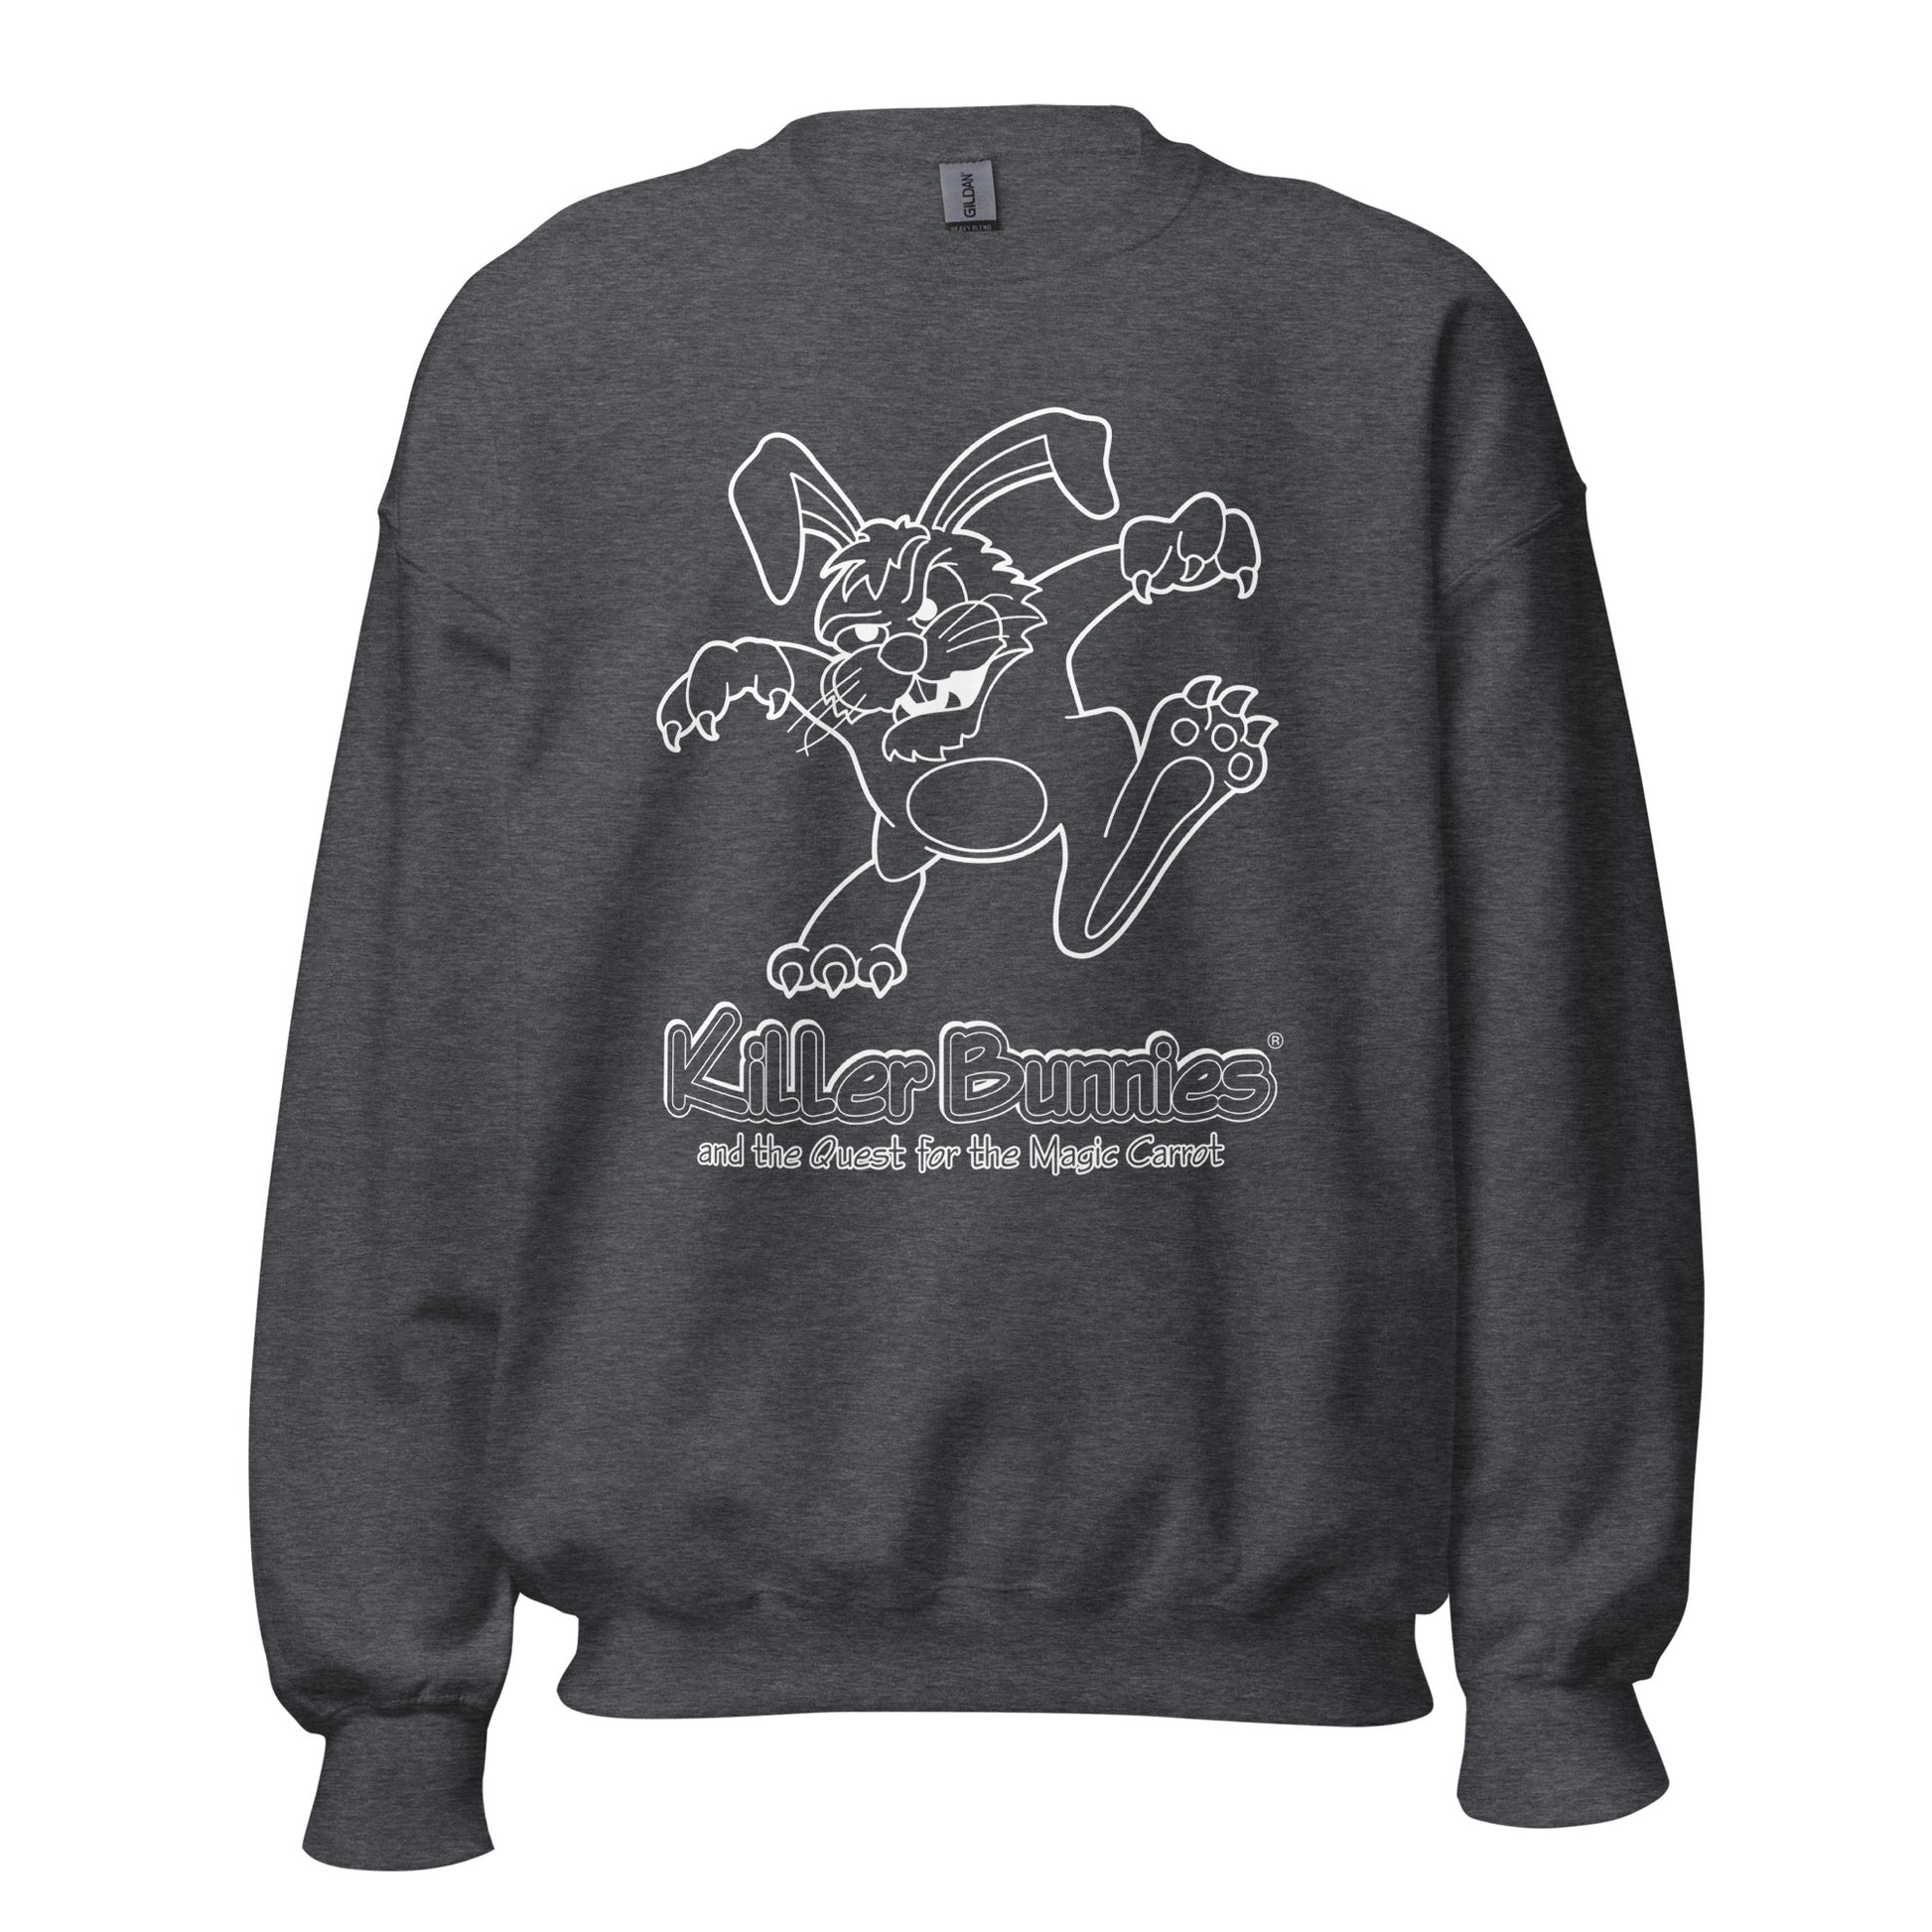 Killer Bunnies Illuminated Unisex Sweatshirt - Dark Heather